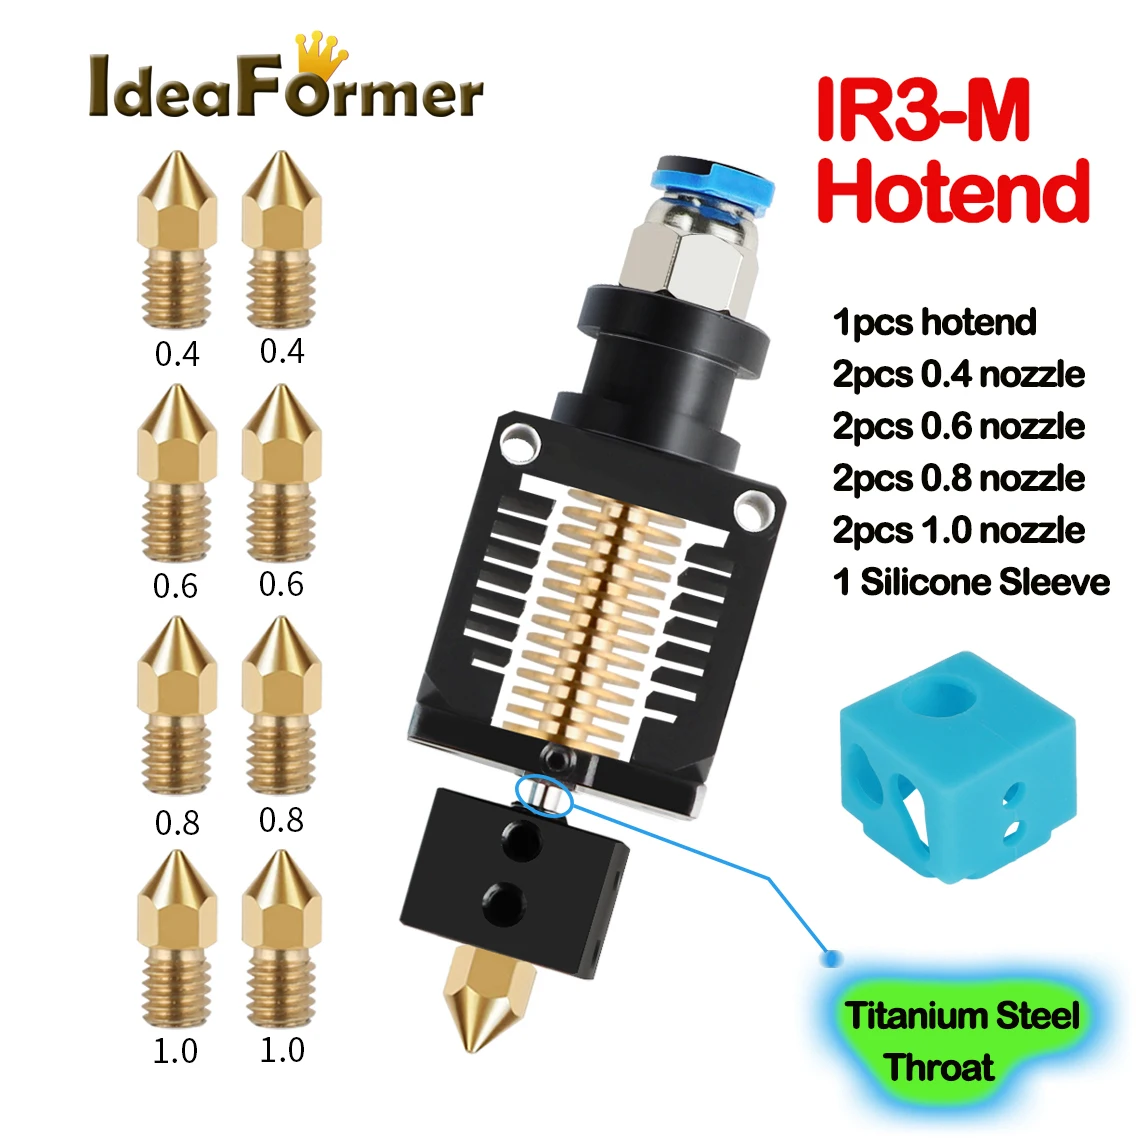 

IdeaFormer IR3-M Hotend все металлические с 8 шт соплом и титана сталь горло для Ideaformer IR3 ремень 3D принтер и V5/V6 J-head